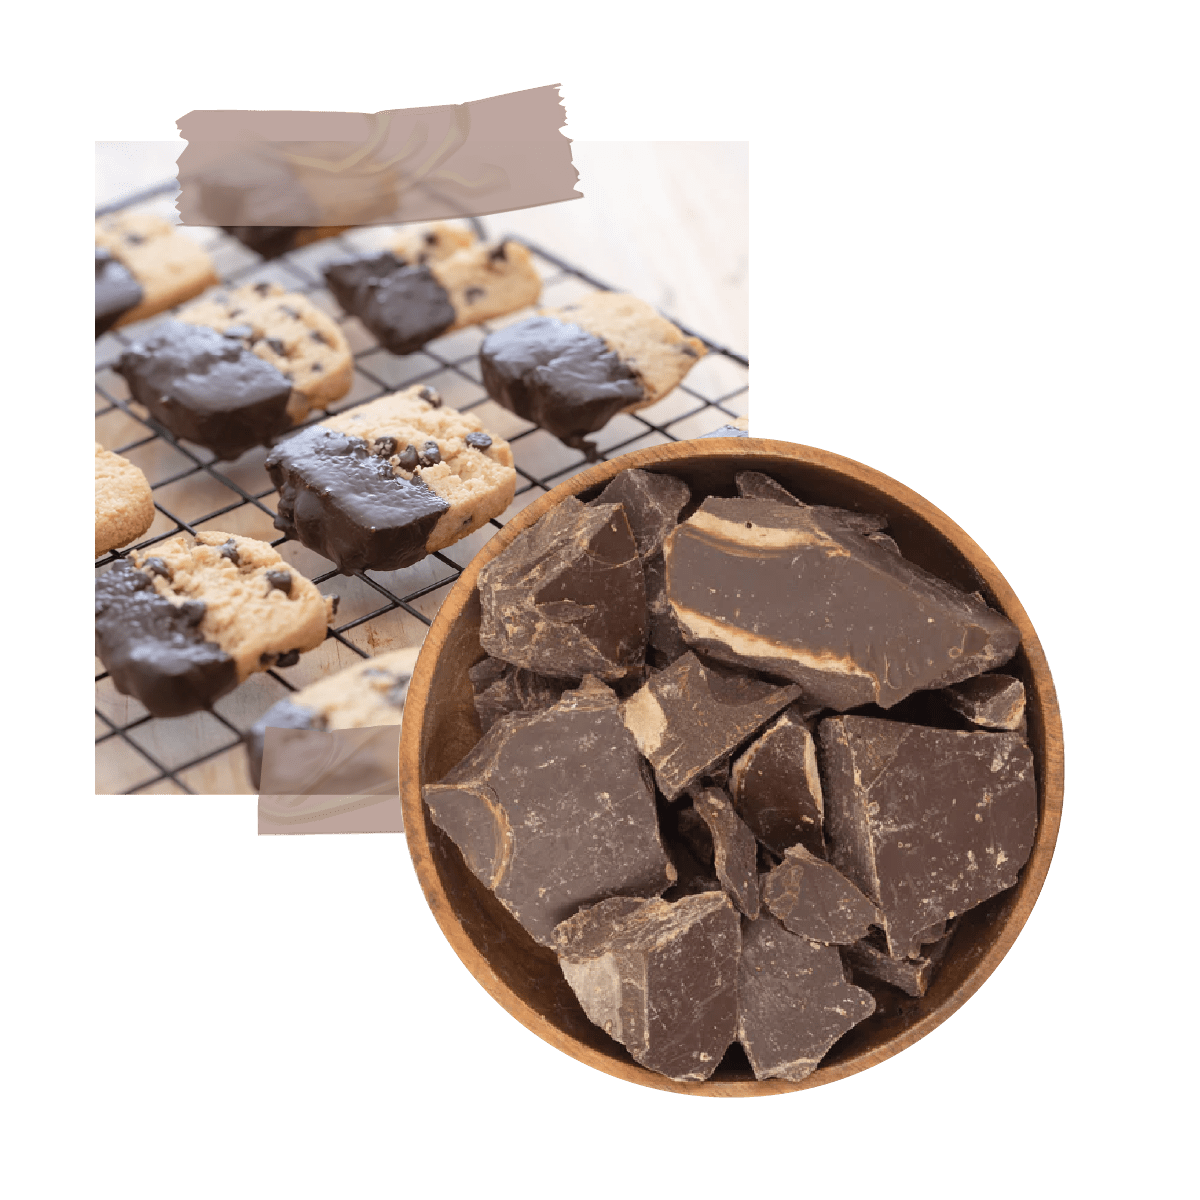 Chocolate Amargo - 90% cacao - Estado Natural